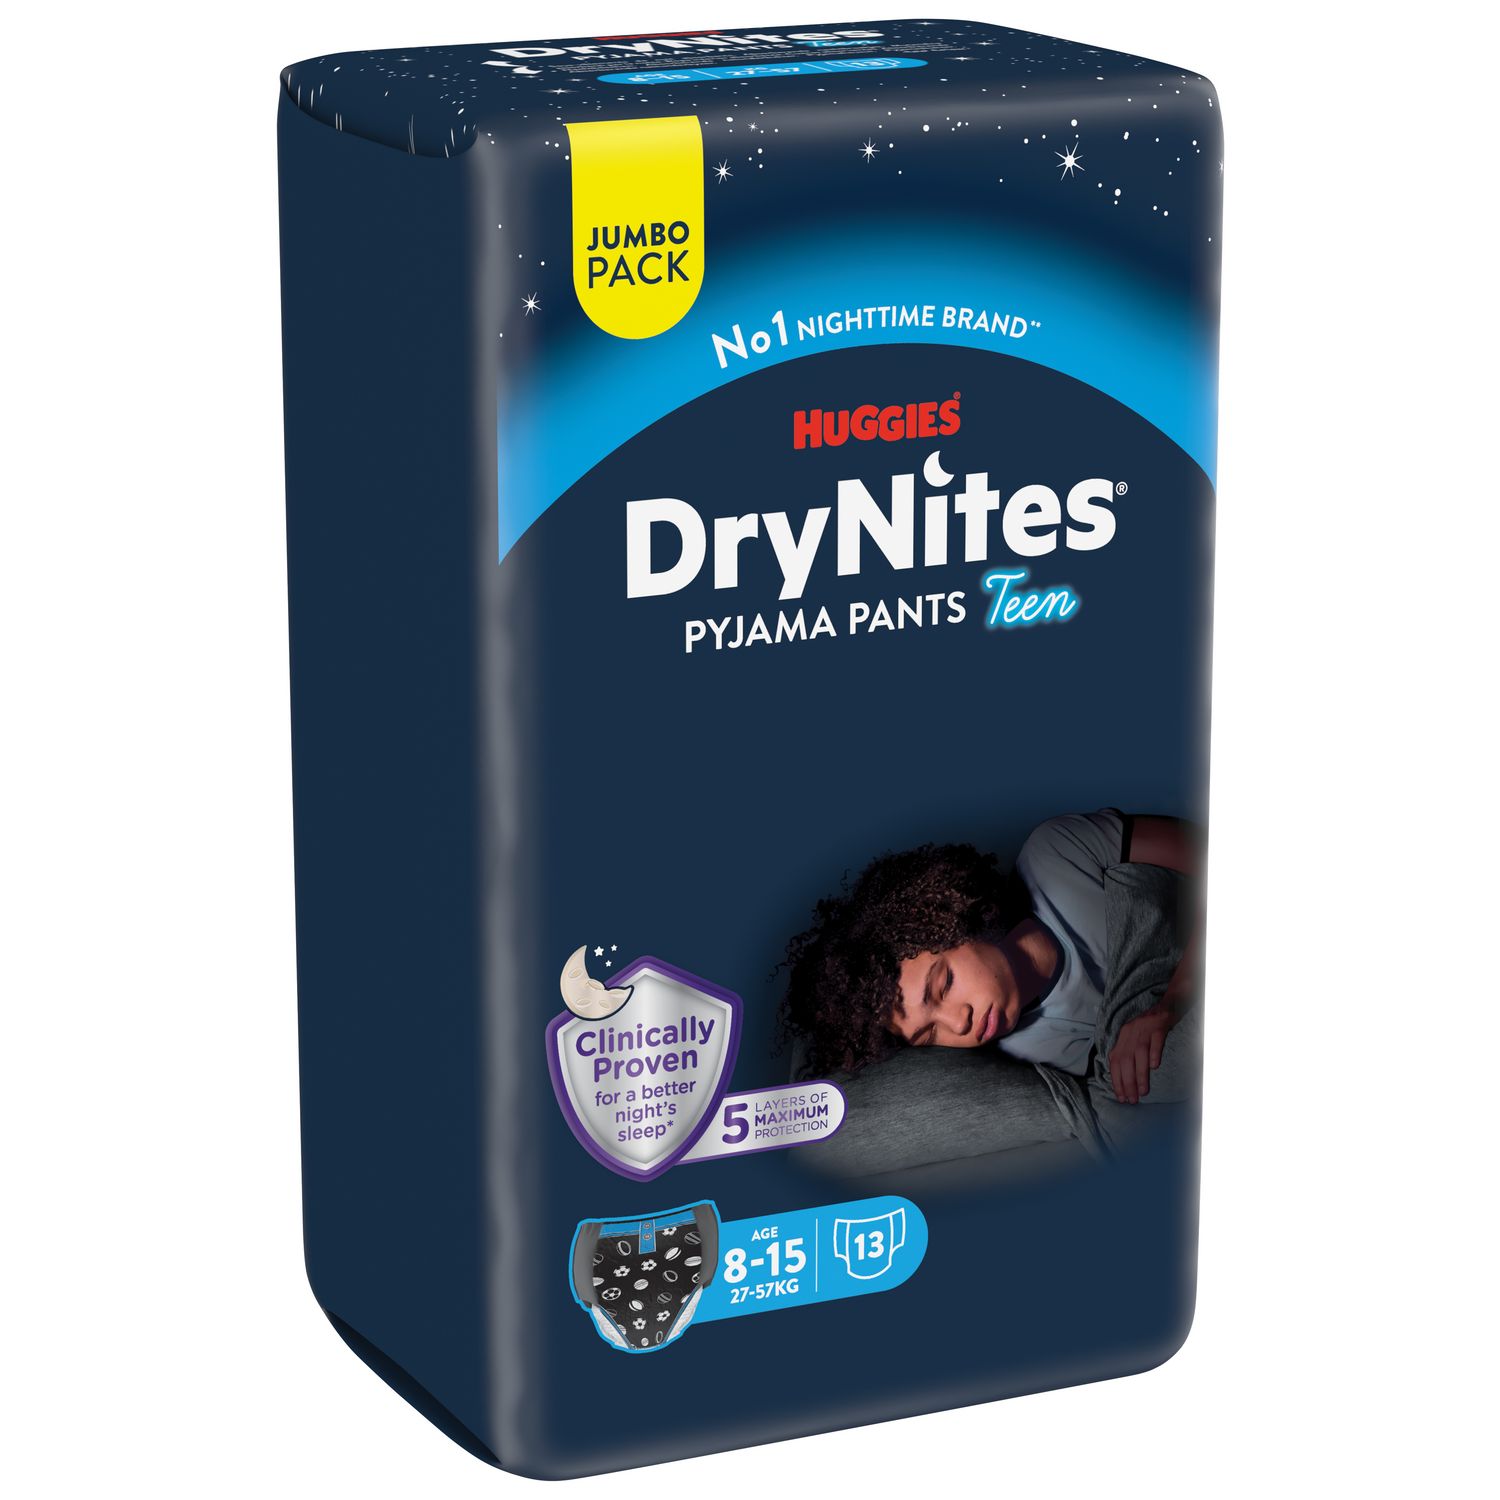 Huggies Drynites 8-15 ans Garçon (27-57kg) - Sous-Vêtements de Nuit  Absorbants & Alèses absorbantes jetables pour lit simple (88 x 78 cm), Pour